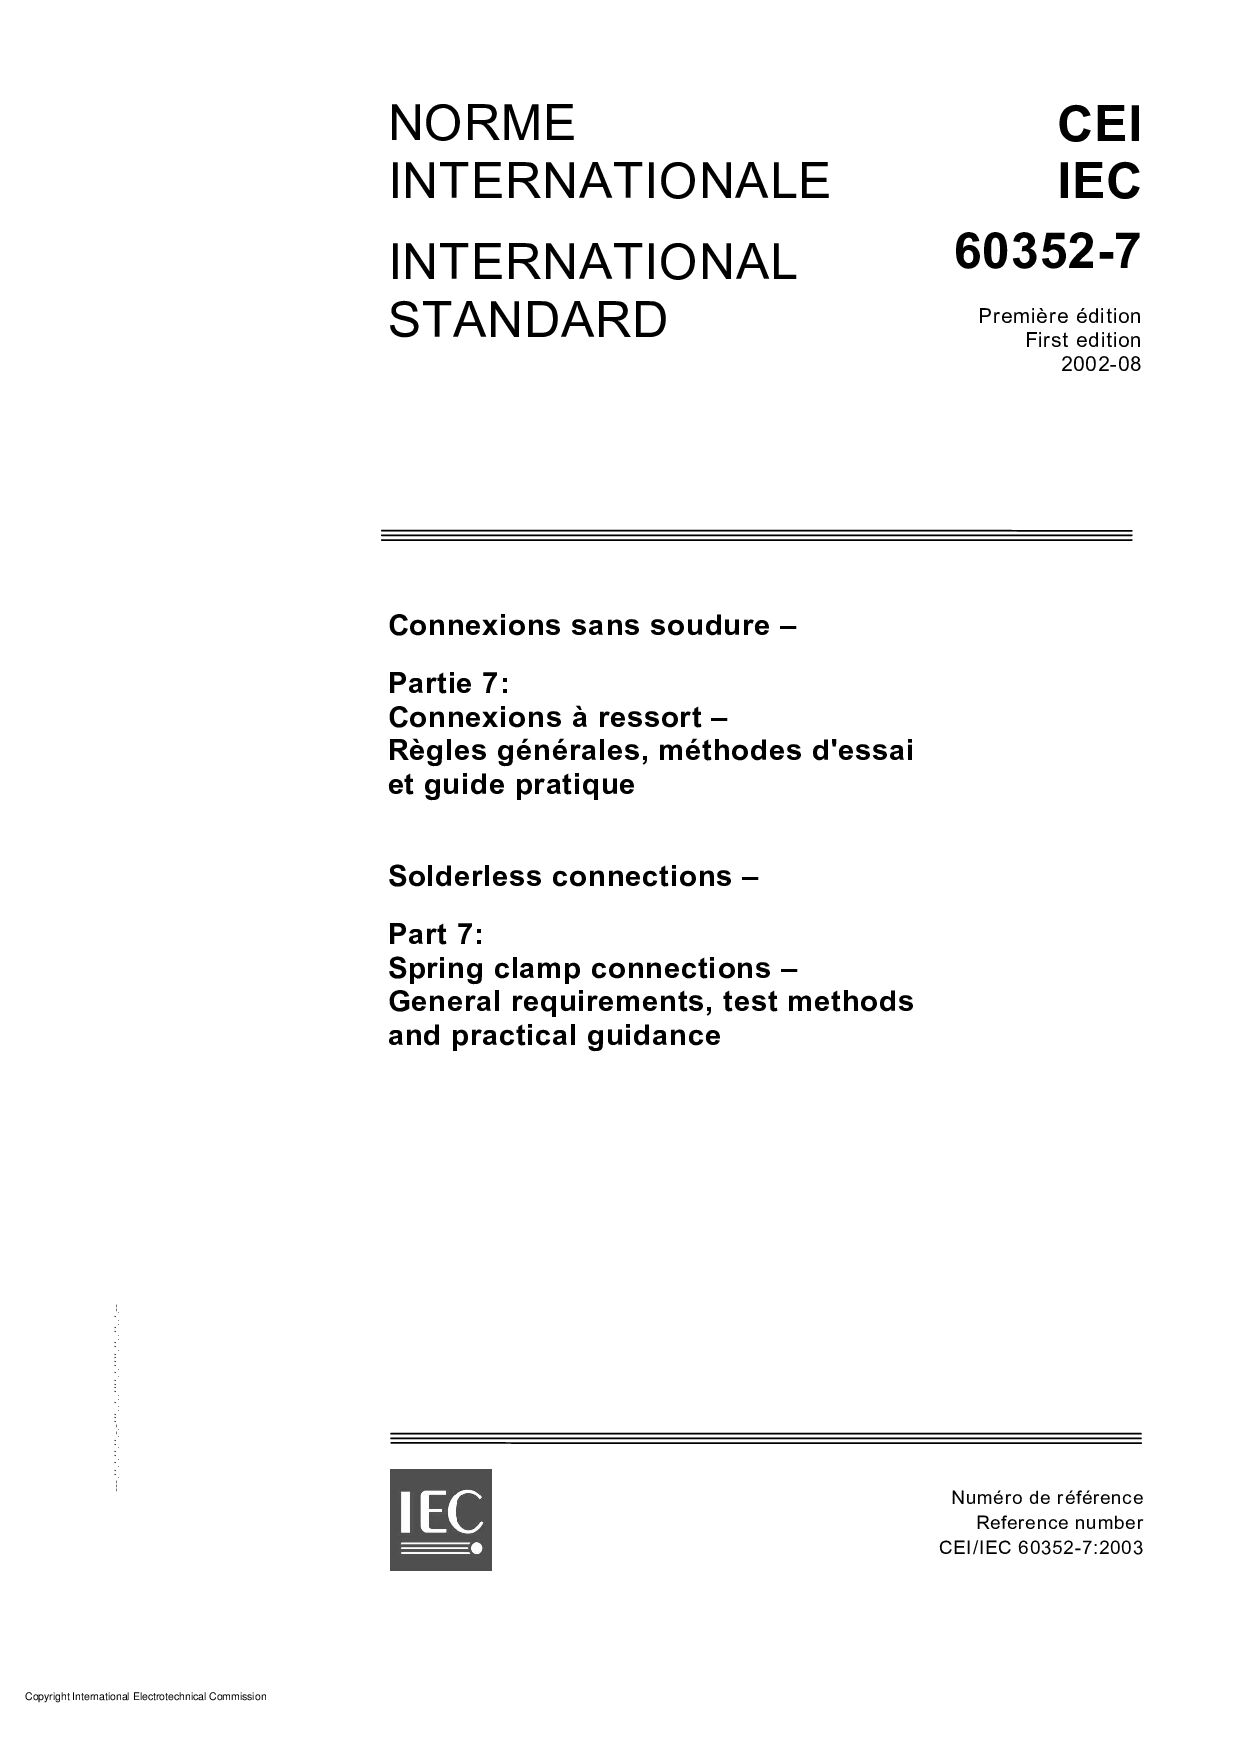 IEC 60352-7:2002